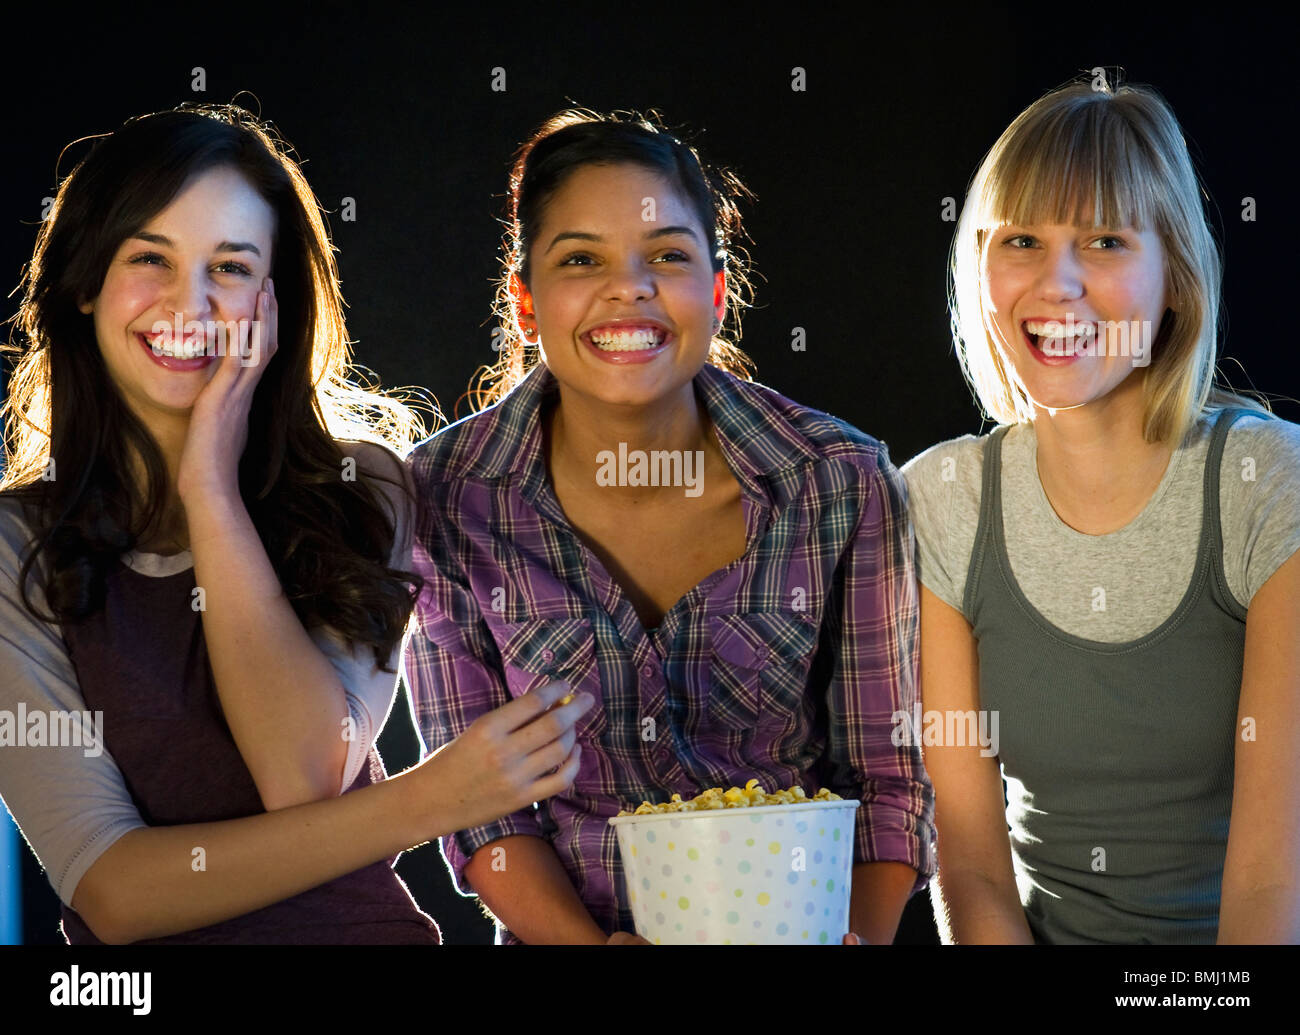 Les jeunes filles eating popcorn Banque D'Images